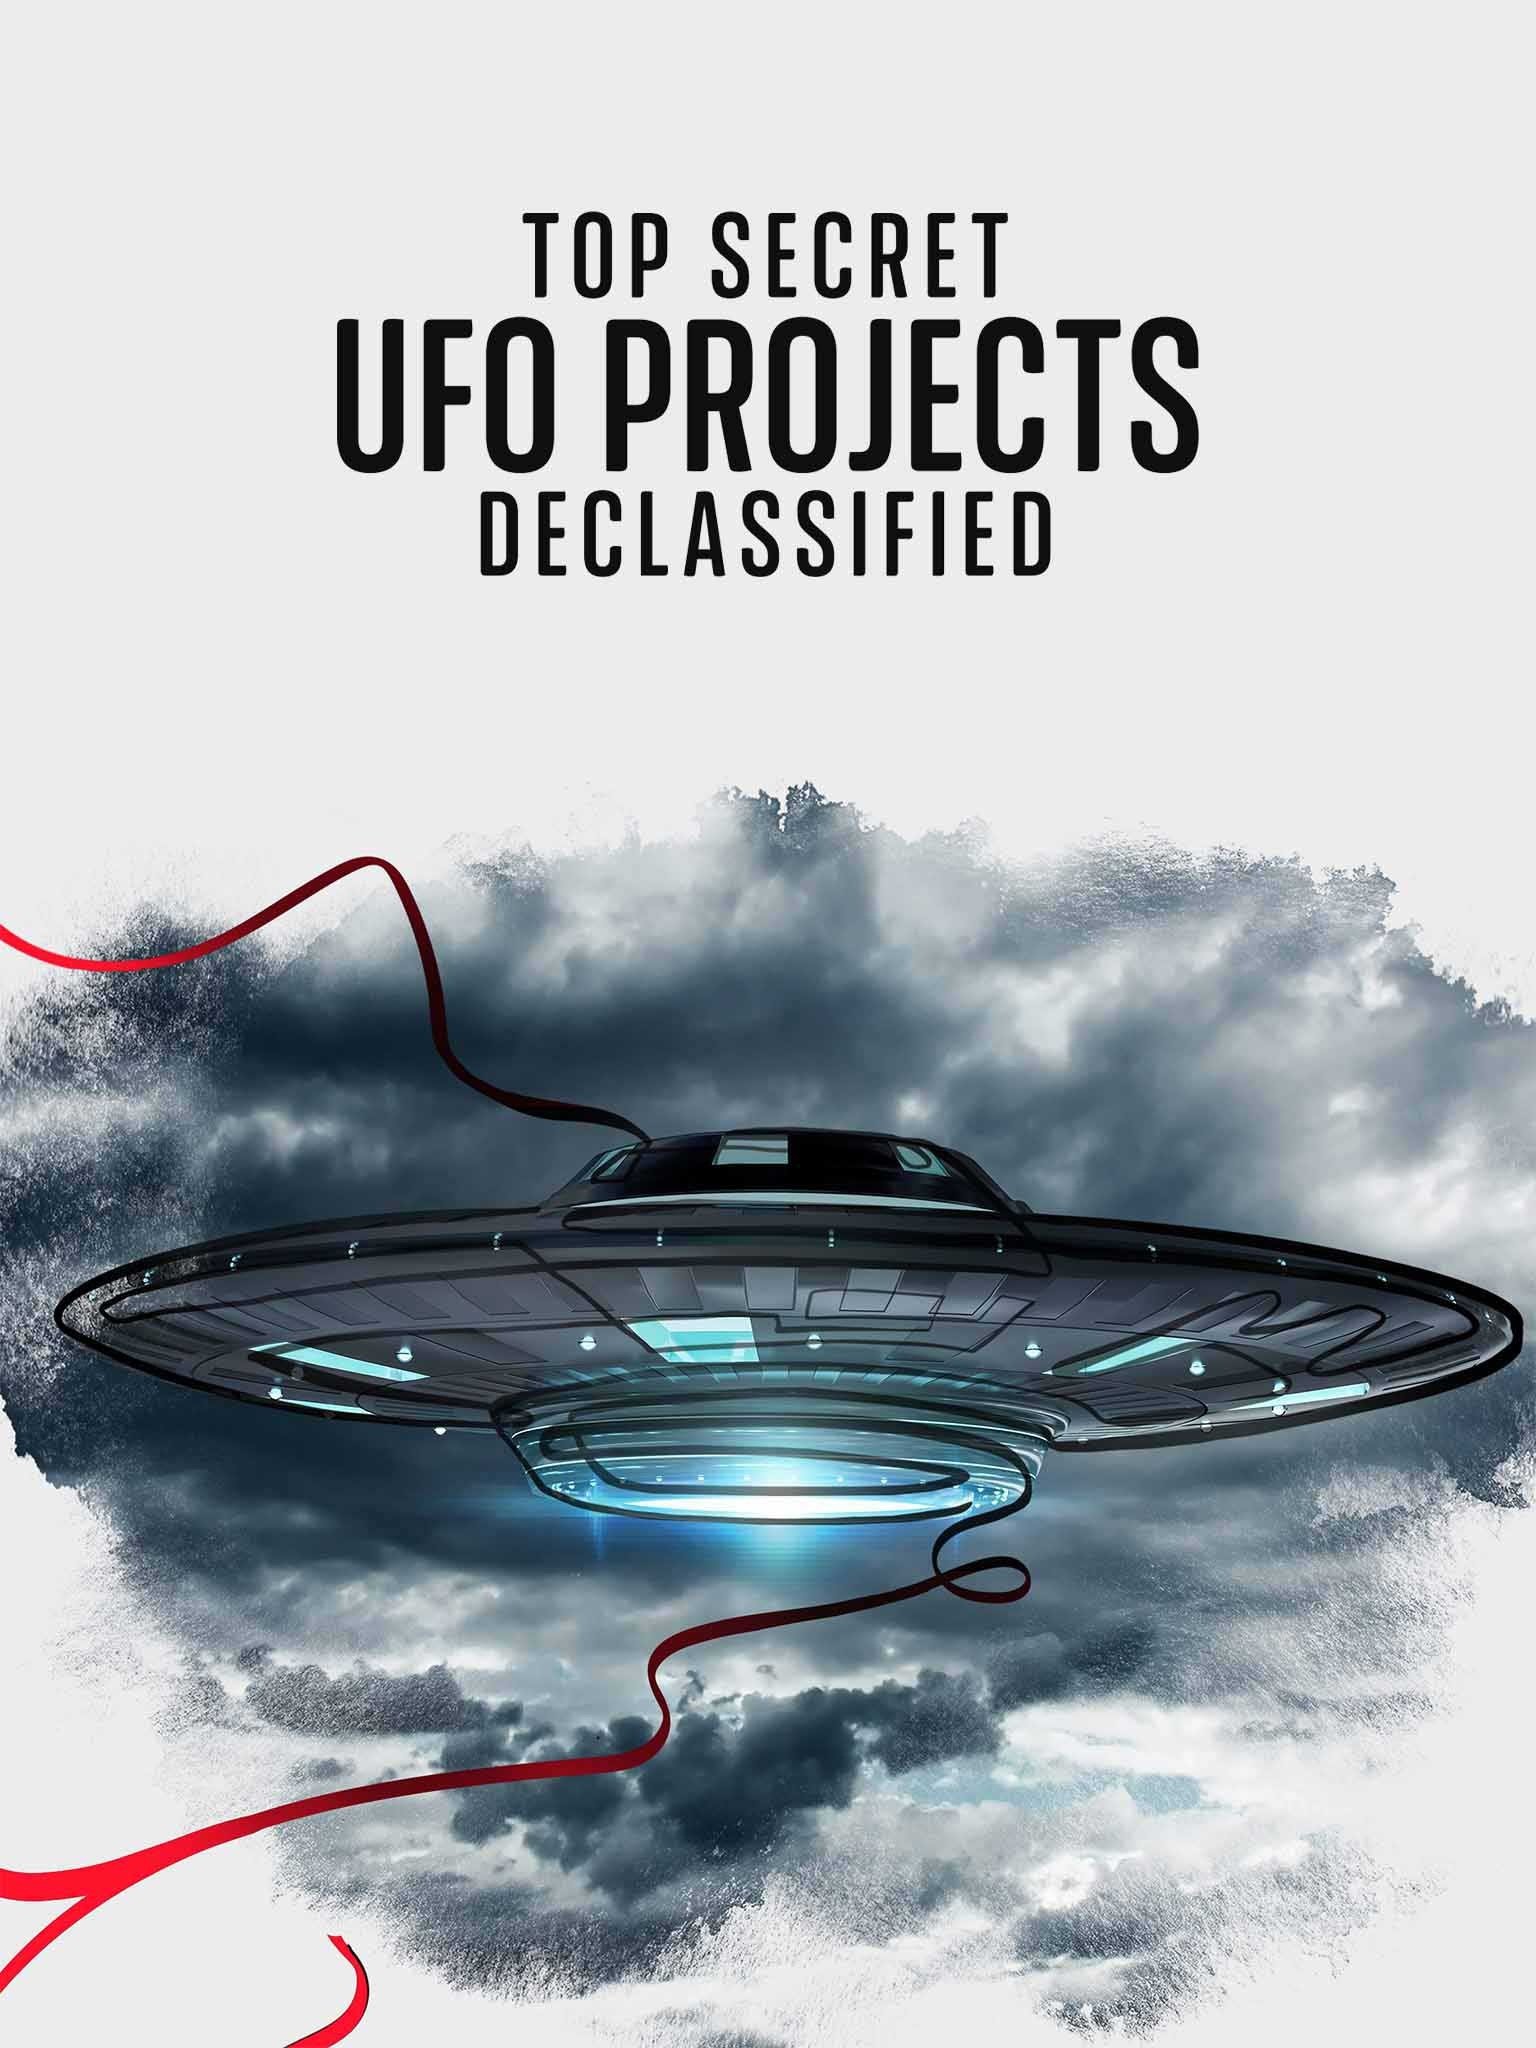 Dự án UFO tuyệt mật: Hé lộ bí ẩn